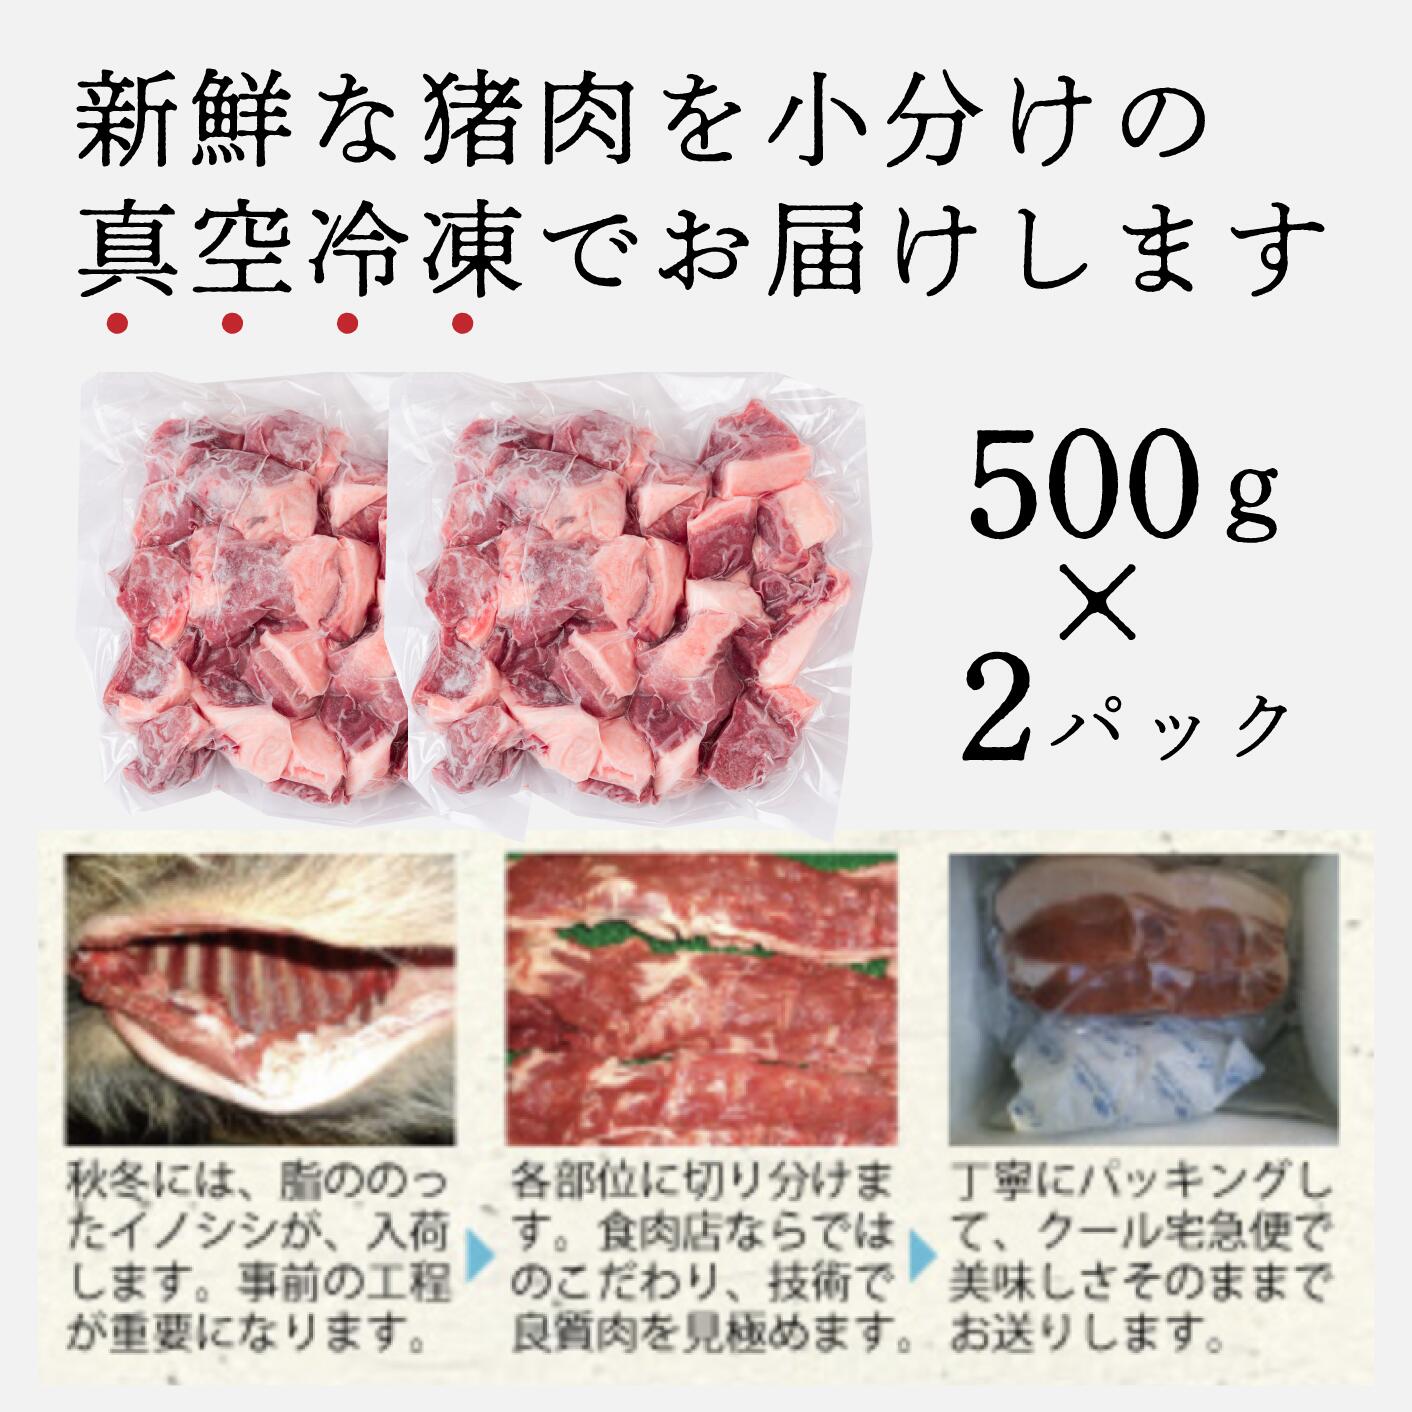 【ふるさと納税】天然猪肉ぶつ切り 約1kg(500g×2) 広島県 猪肉 しし肉 天然 ジビエ しし汁 カレー 煮込み 冷凍 送料無料 世羅 A034-02